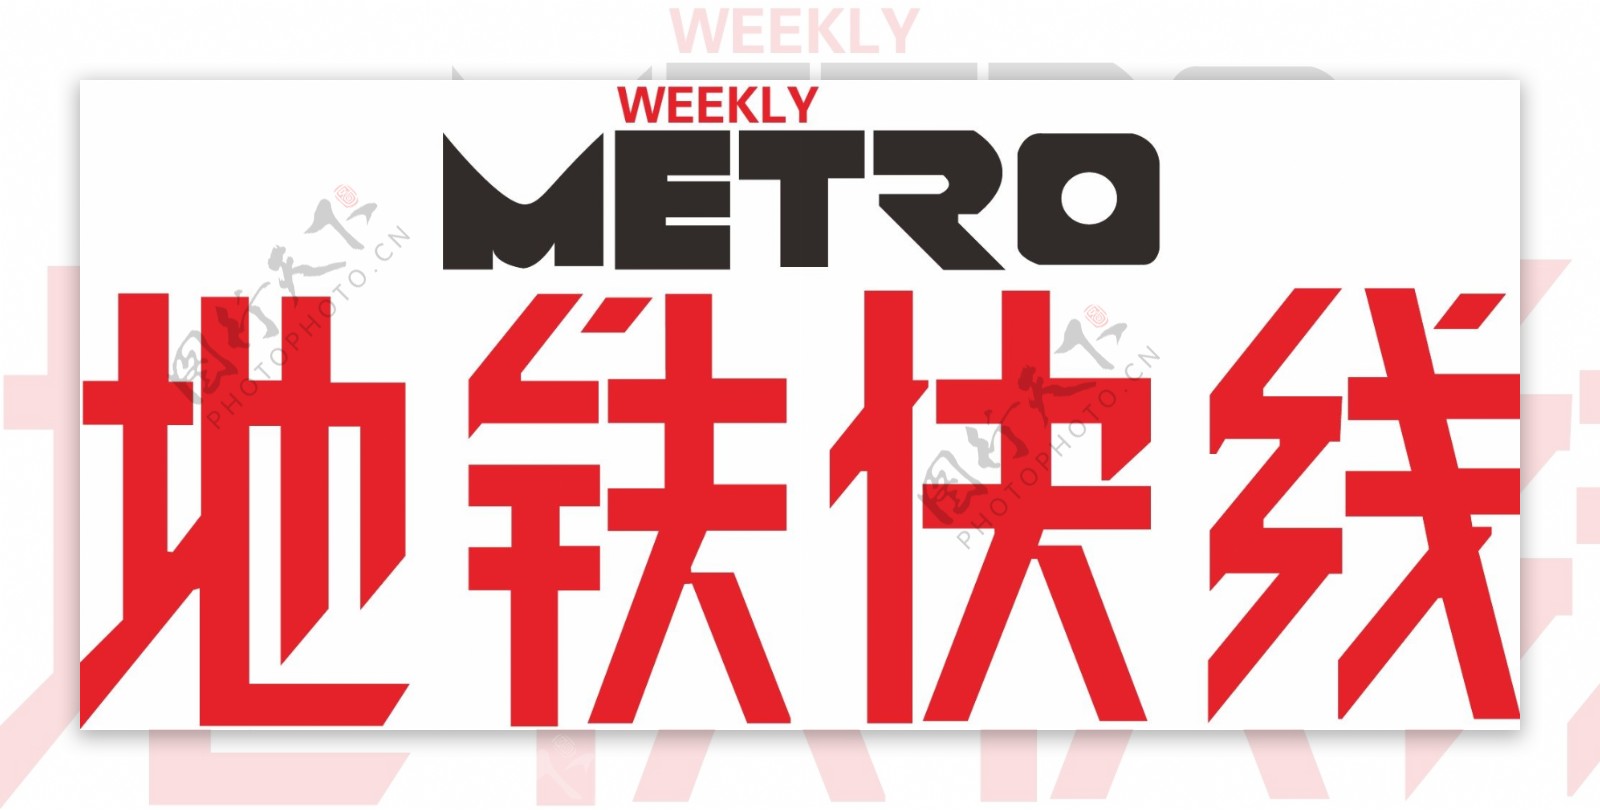 地铁传媒logo图片